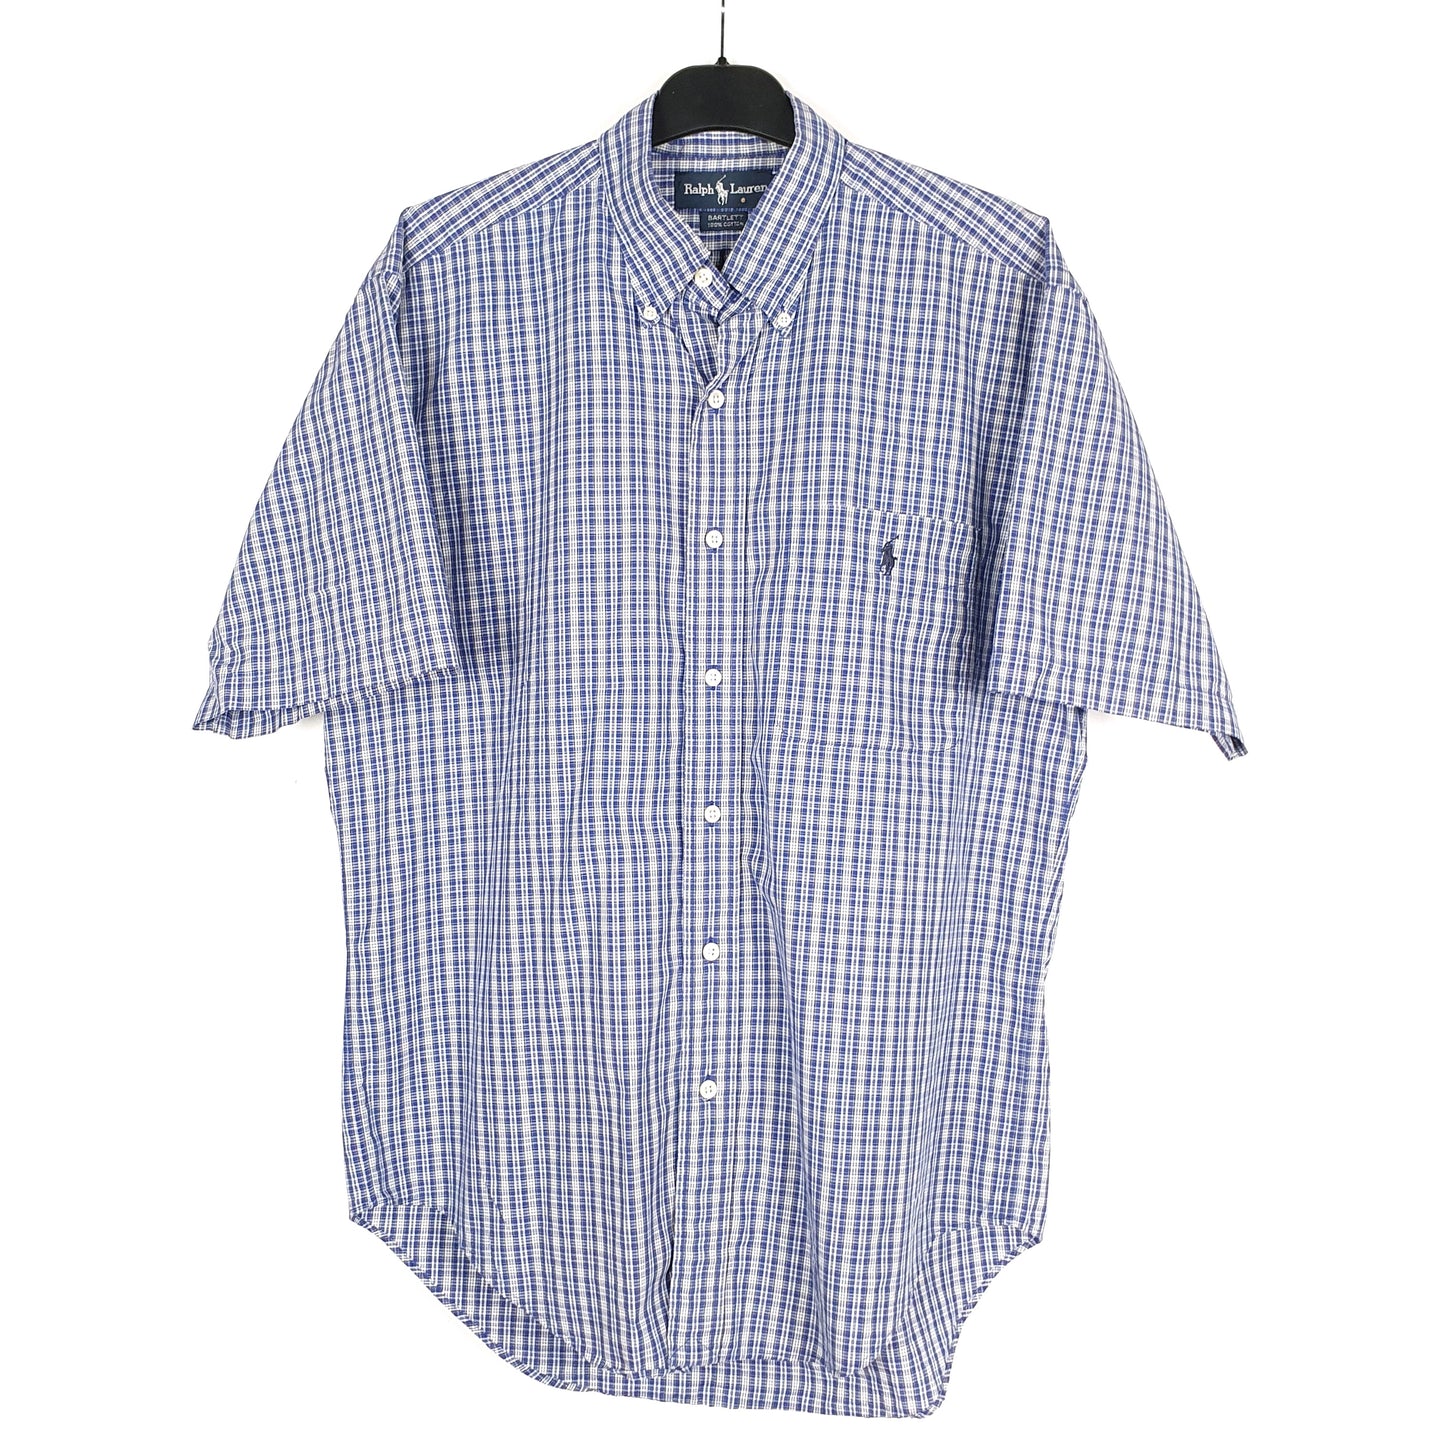 Blue Polo Ralph Lauren Short Sleeve Shirt